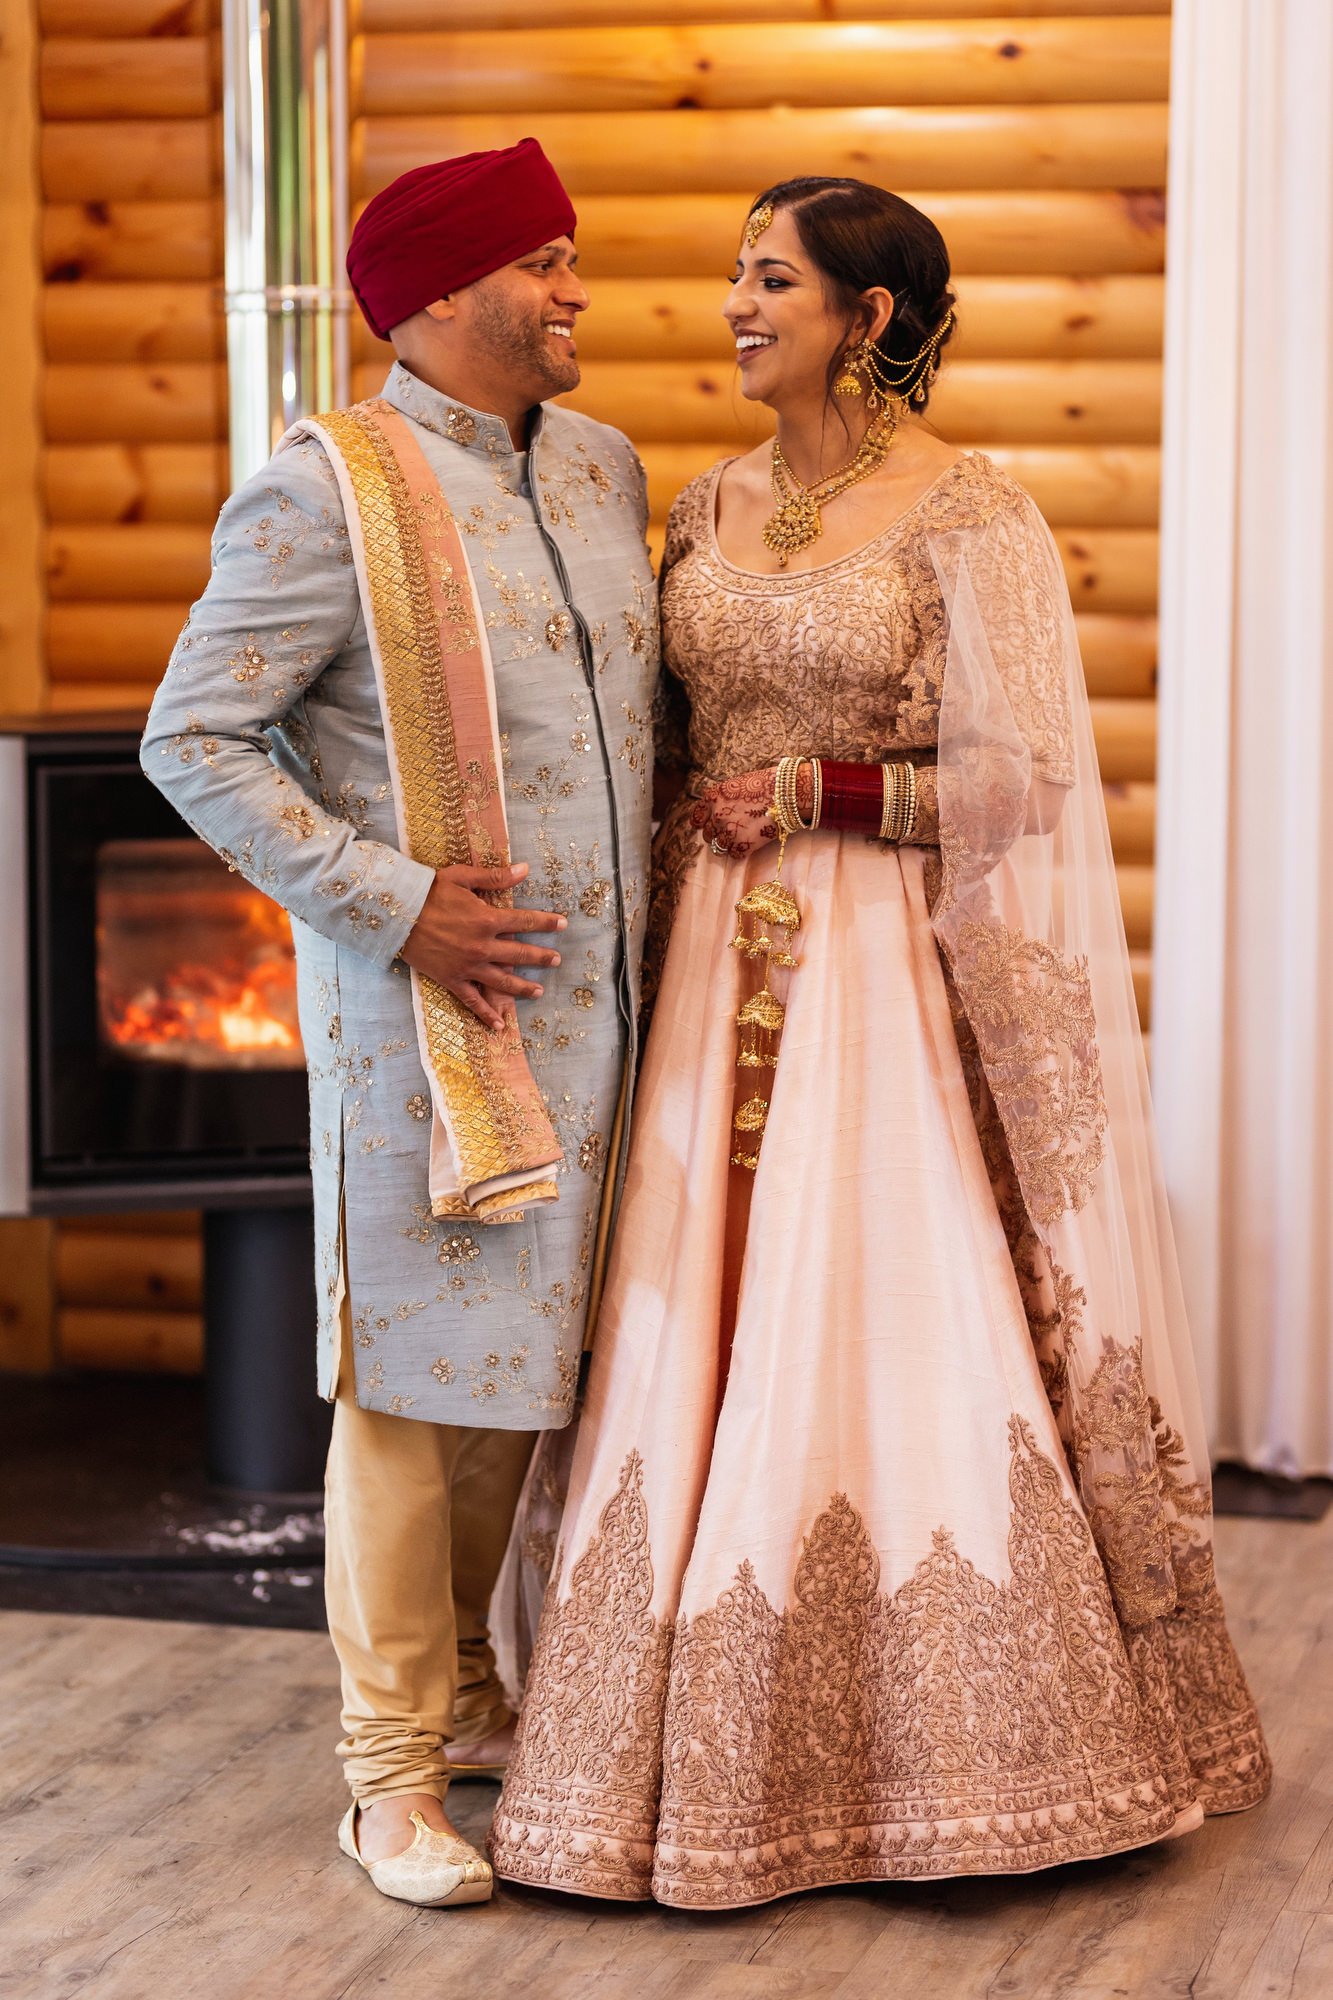 Sikh wedding photographer, Cardiff, Wales, Canada Lodge & Lake, couples portrait